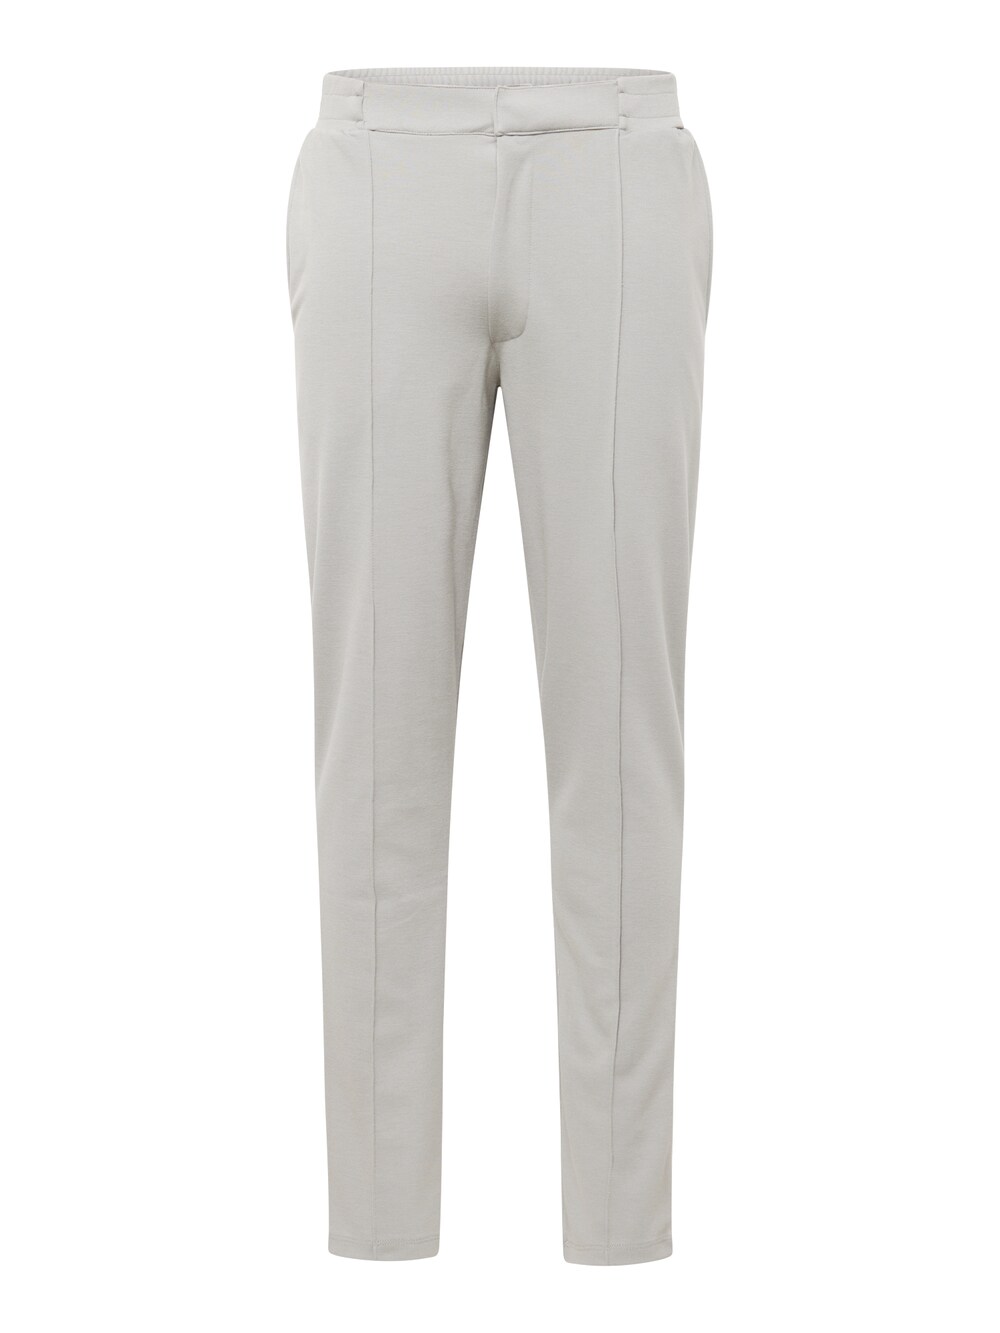 Обычные плиссированные брюки BURTON MENSWEAR LONDON, серый